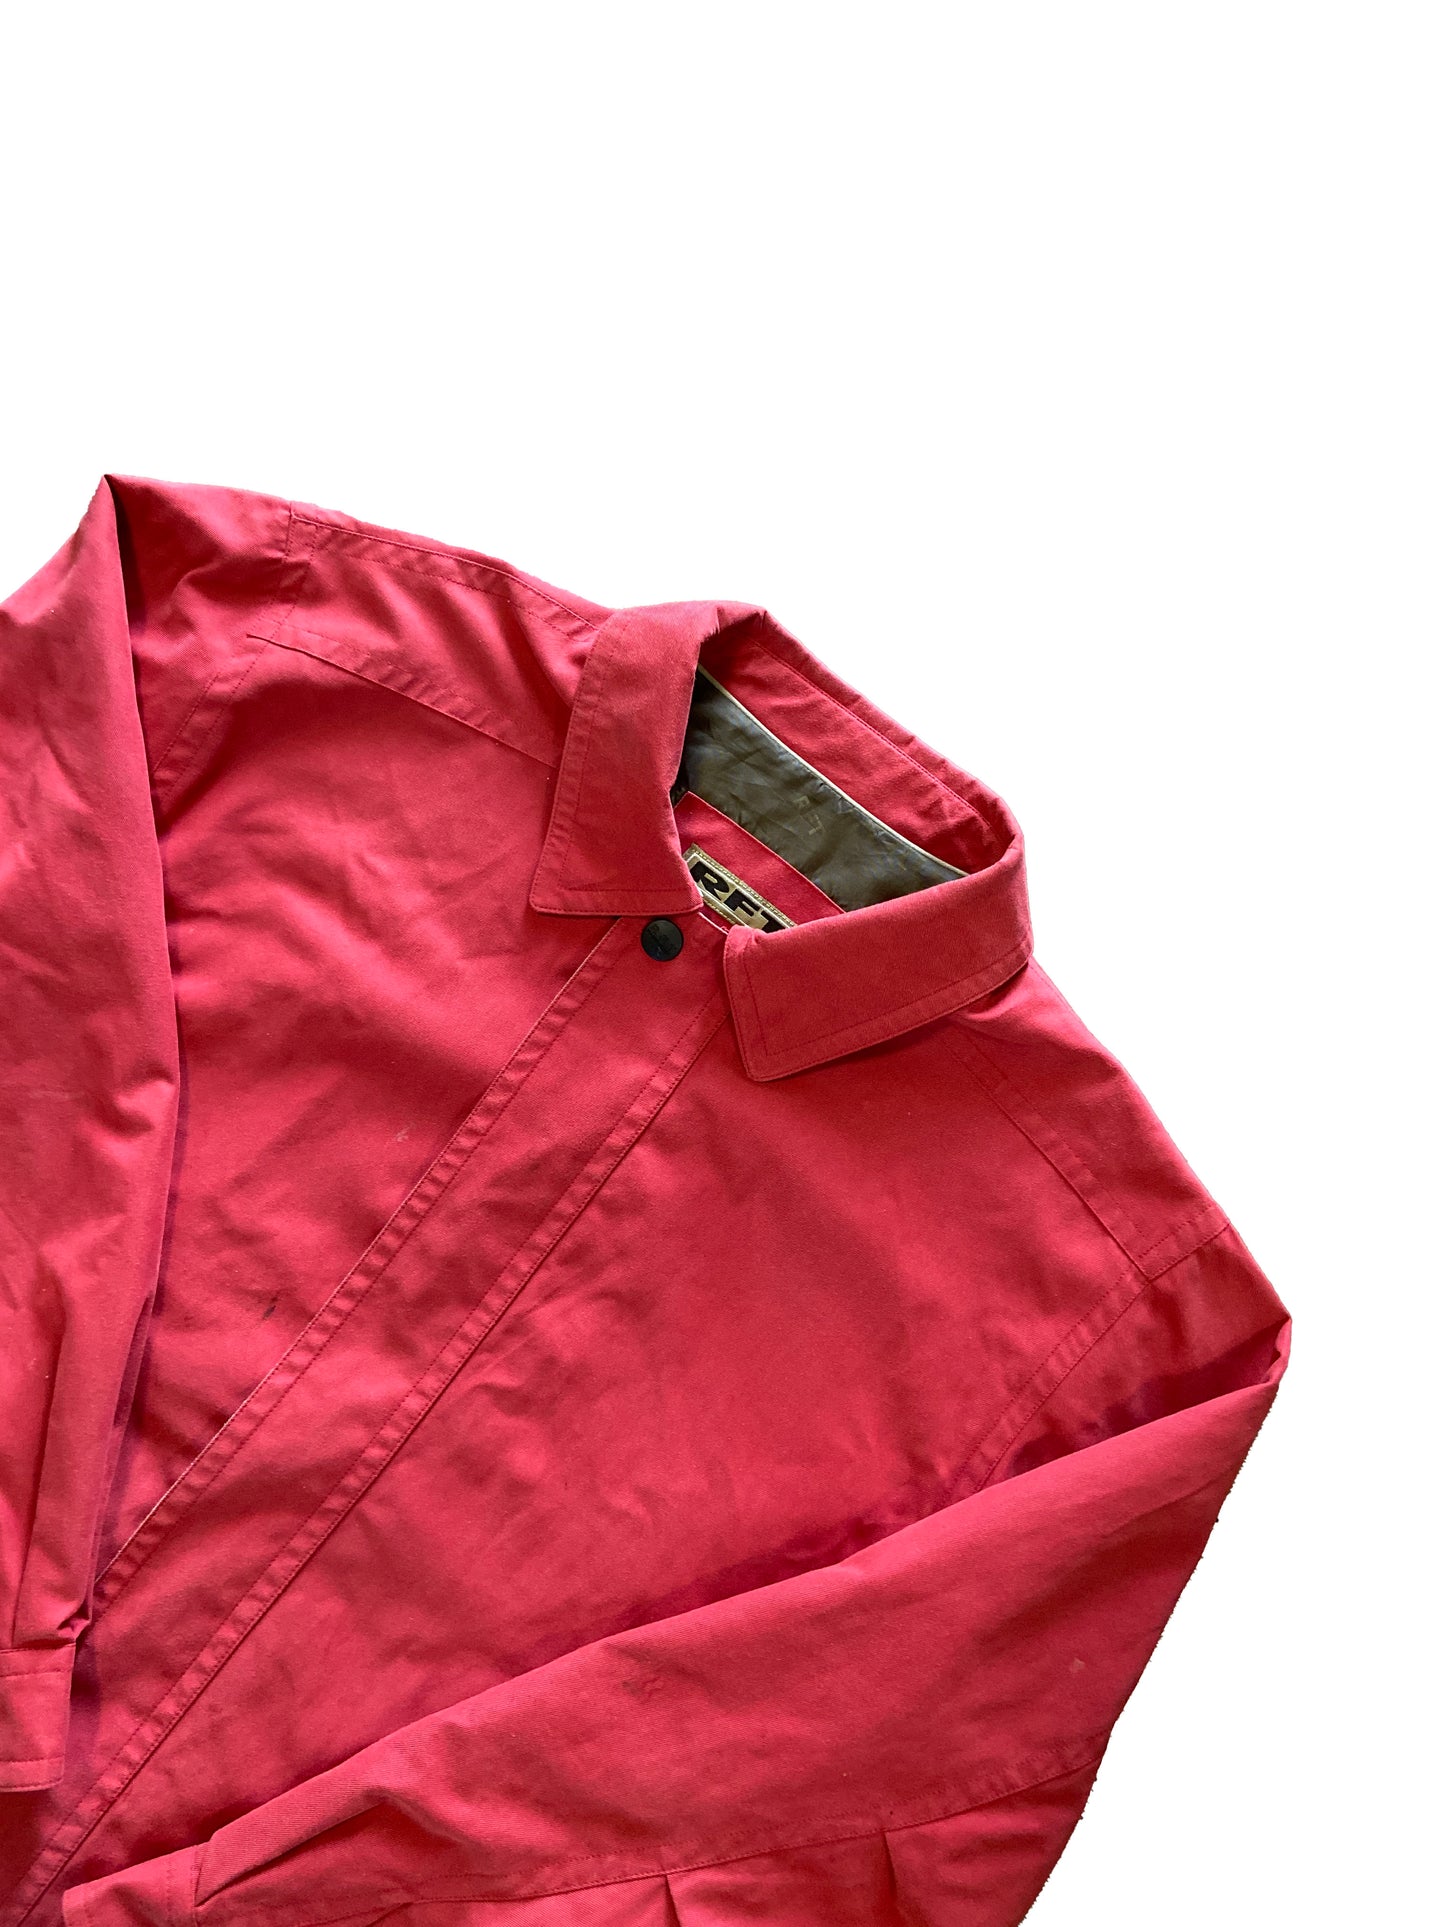 Vintage "Rainforest" Jacket Light Red